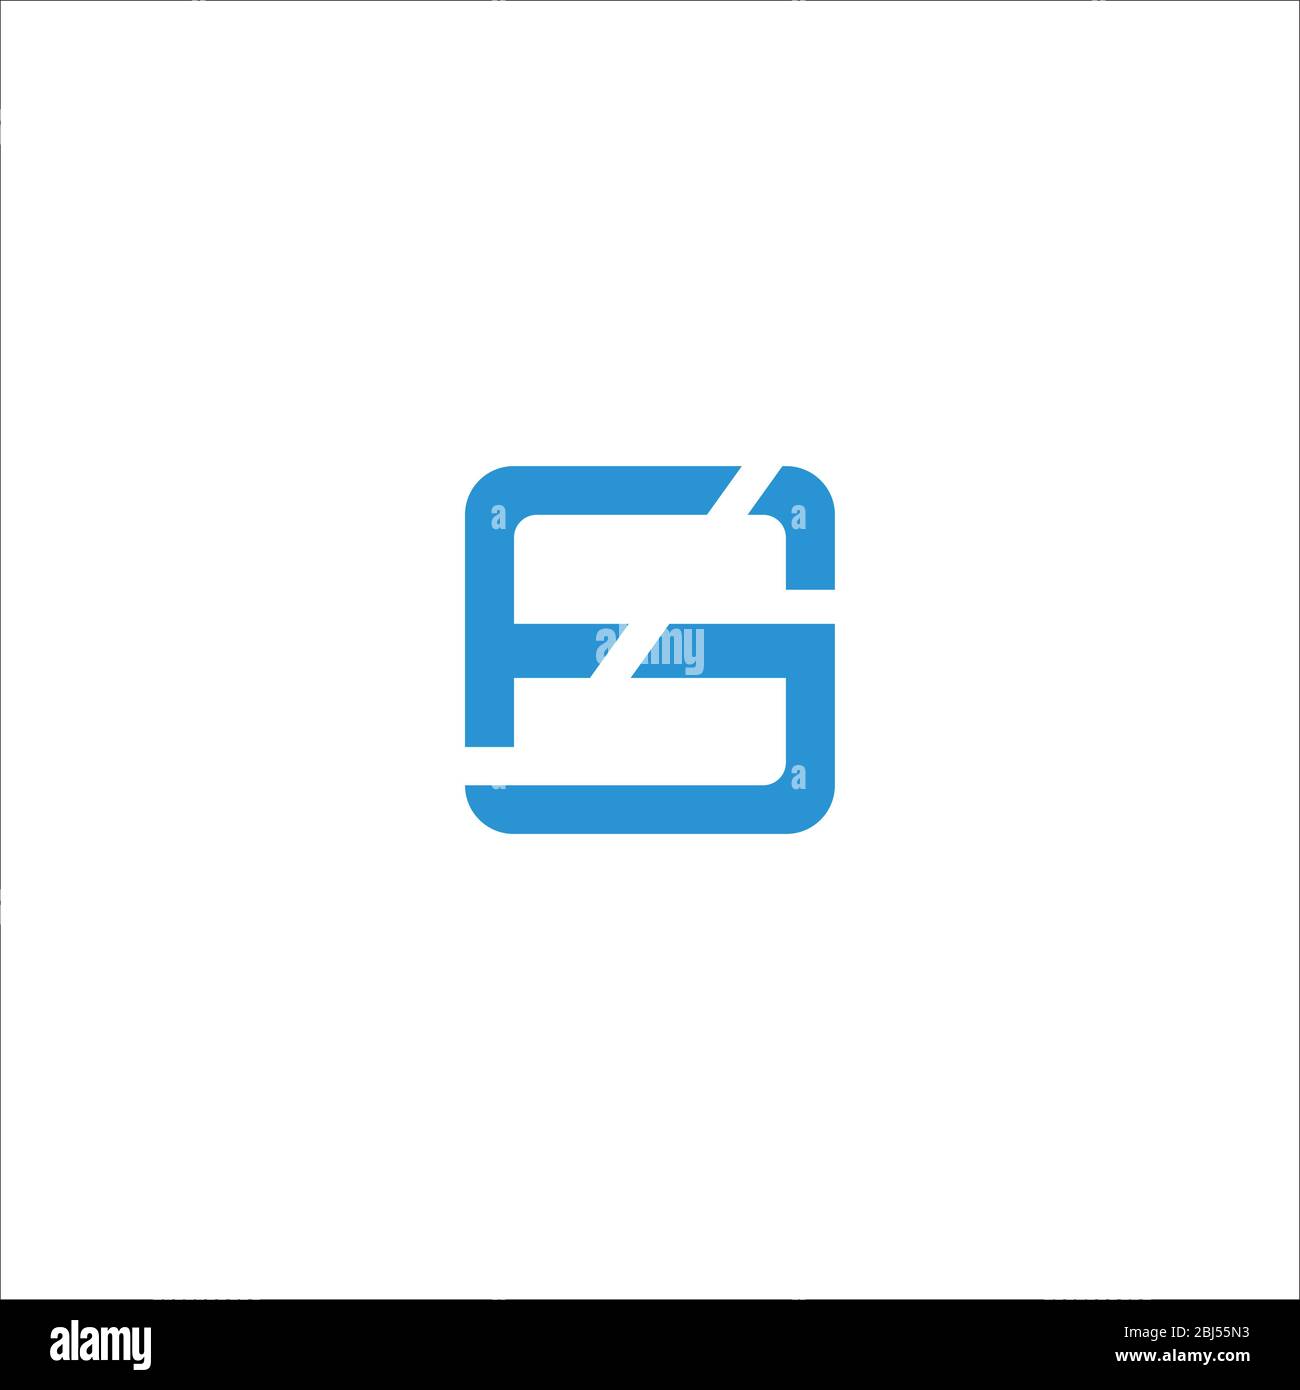 Première lettre logo fg ou logo gf modèle de conception vectoriel Illustration de Vecteur